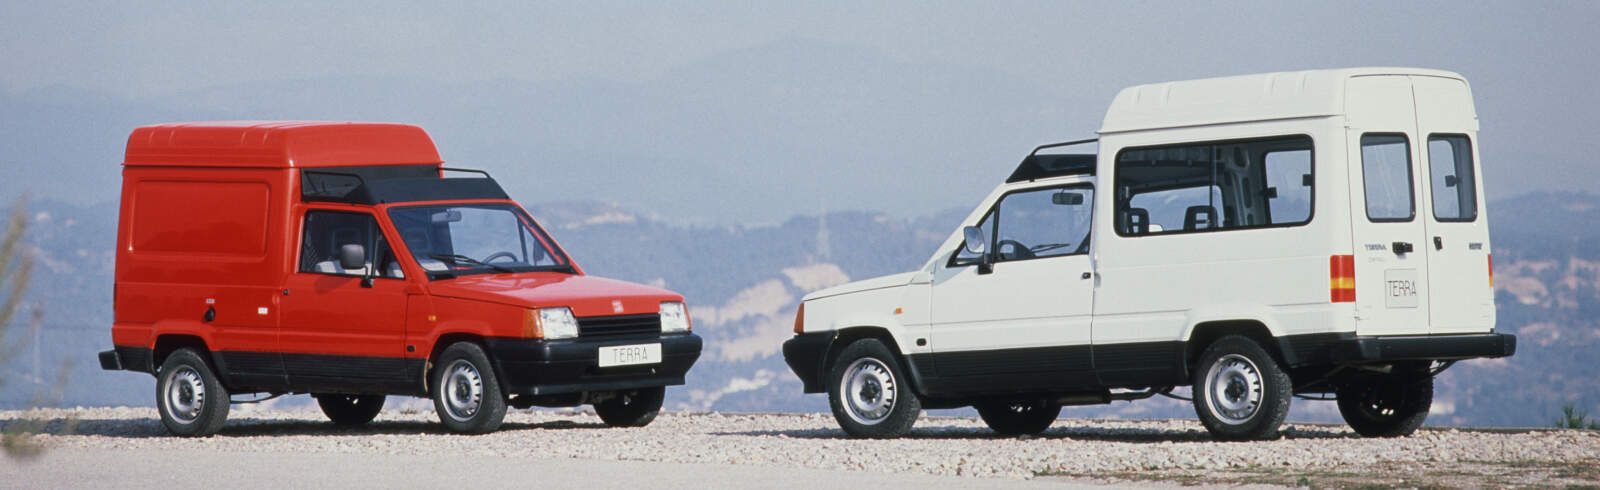 SEAT Terra i Inca – czym wyróżniały się samochody dostawcze hiszpańskiej marki?